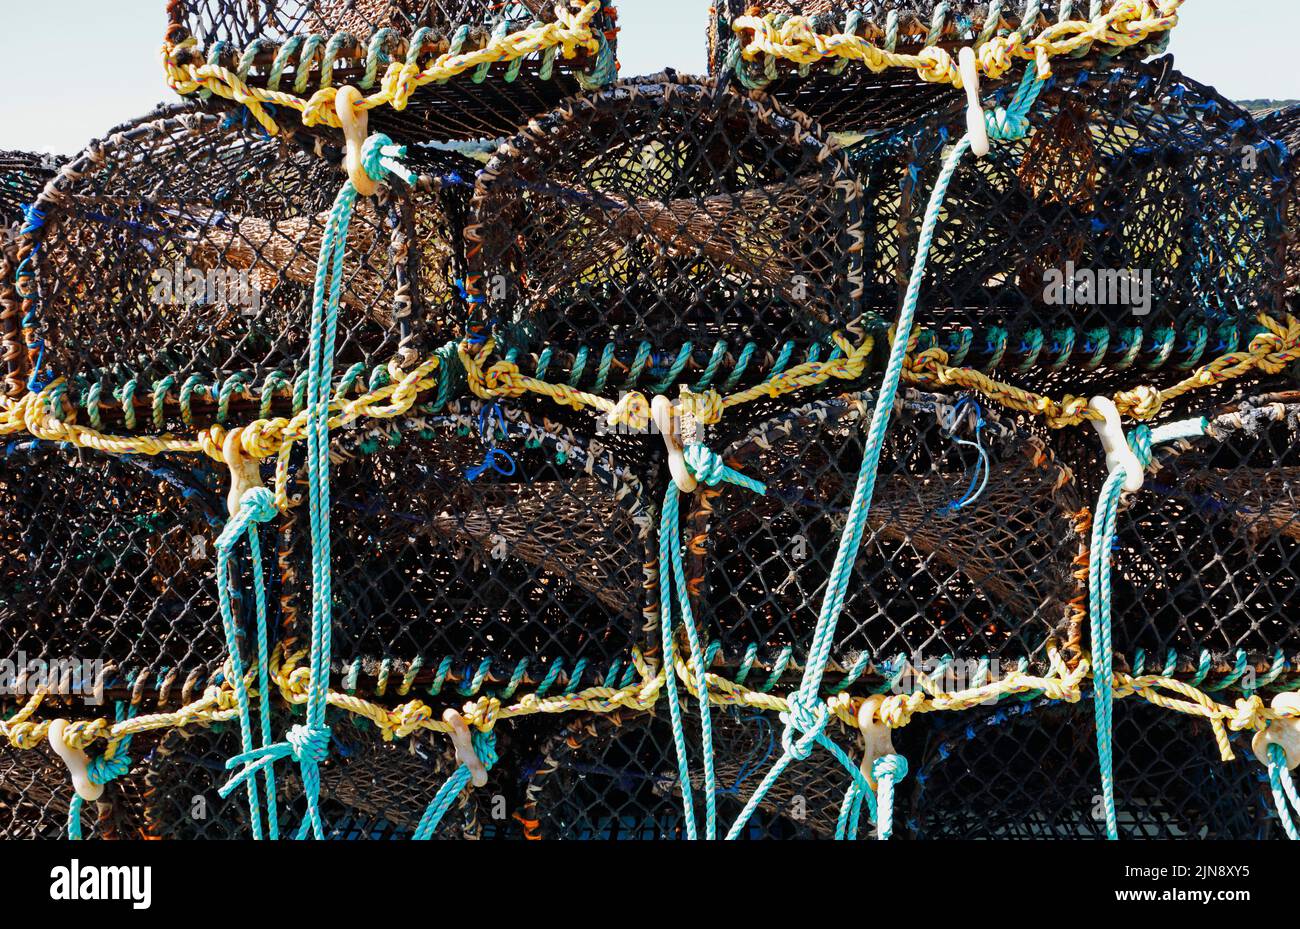 Eine Nahaufnahme von Krabben-/Hummertöpfen am Kiesstrand in North Norfolk, bereit für den Einsatz in Cley-next-the-Sea, Norfolk, England, Großbritannien. Stockfoto